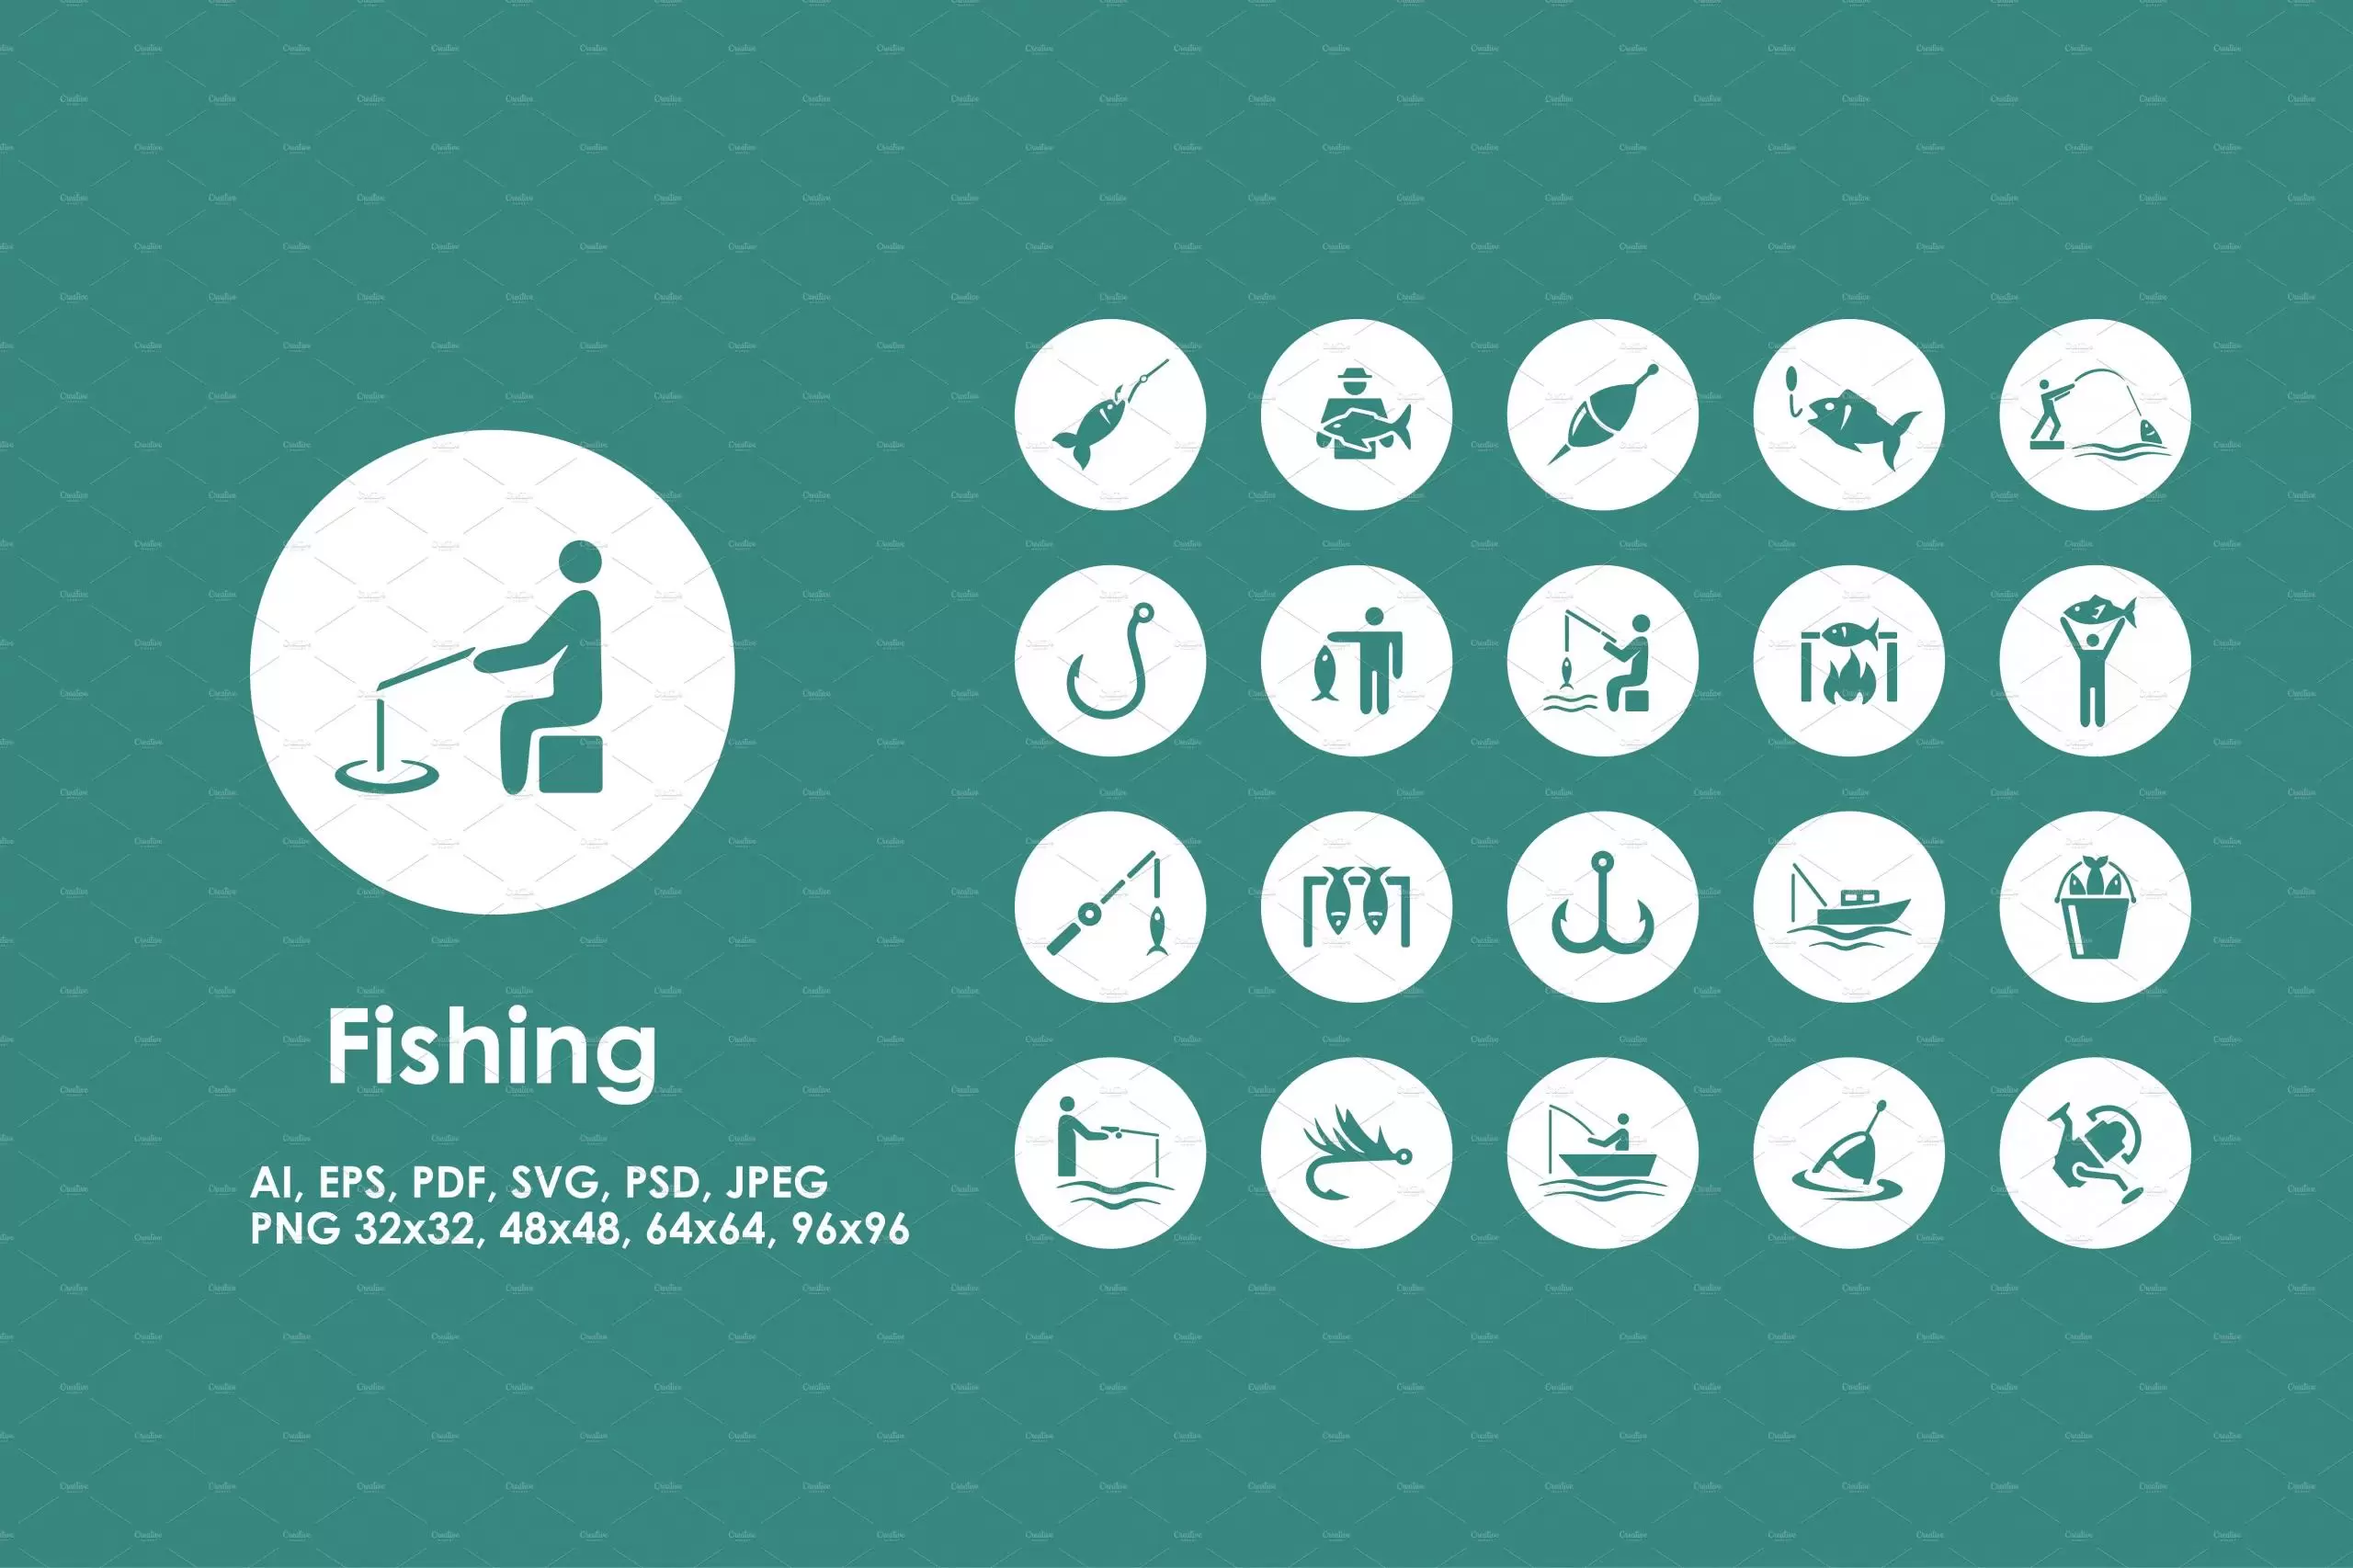 钓鱼图标素材 Fishing icons插图